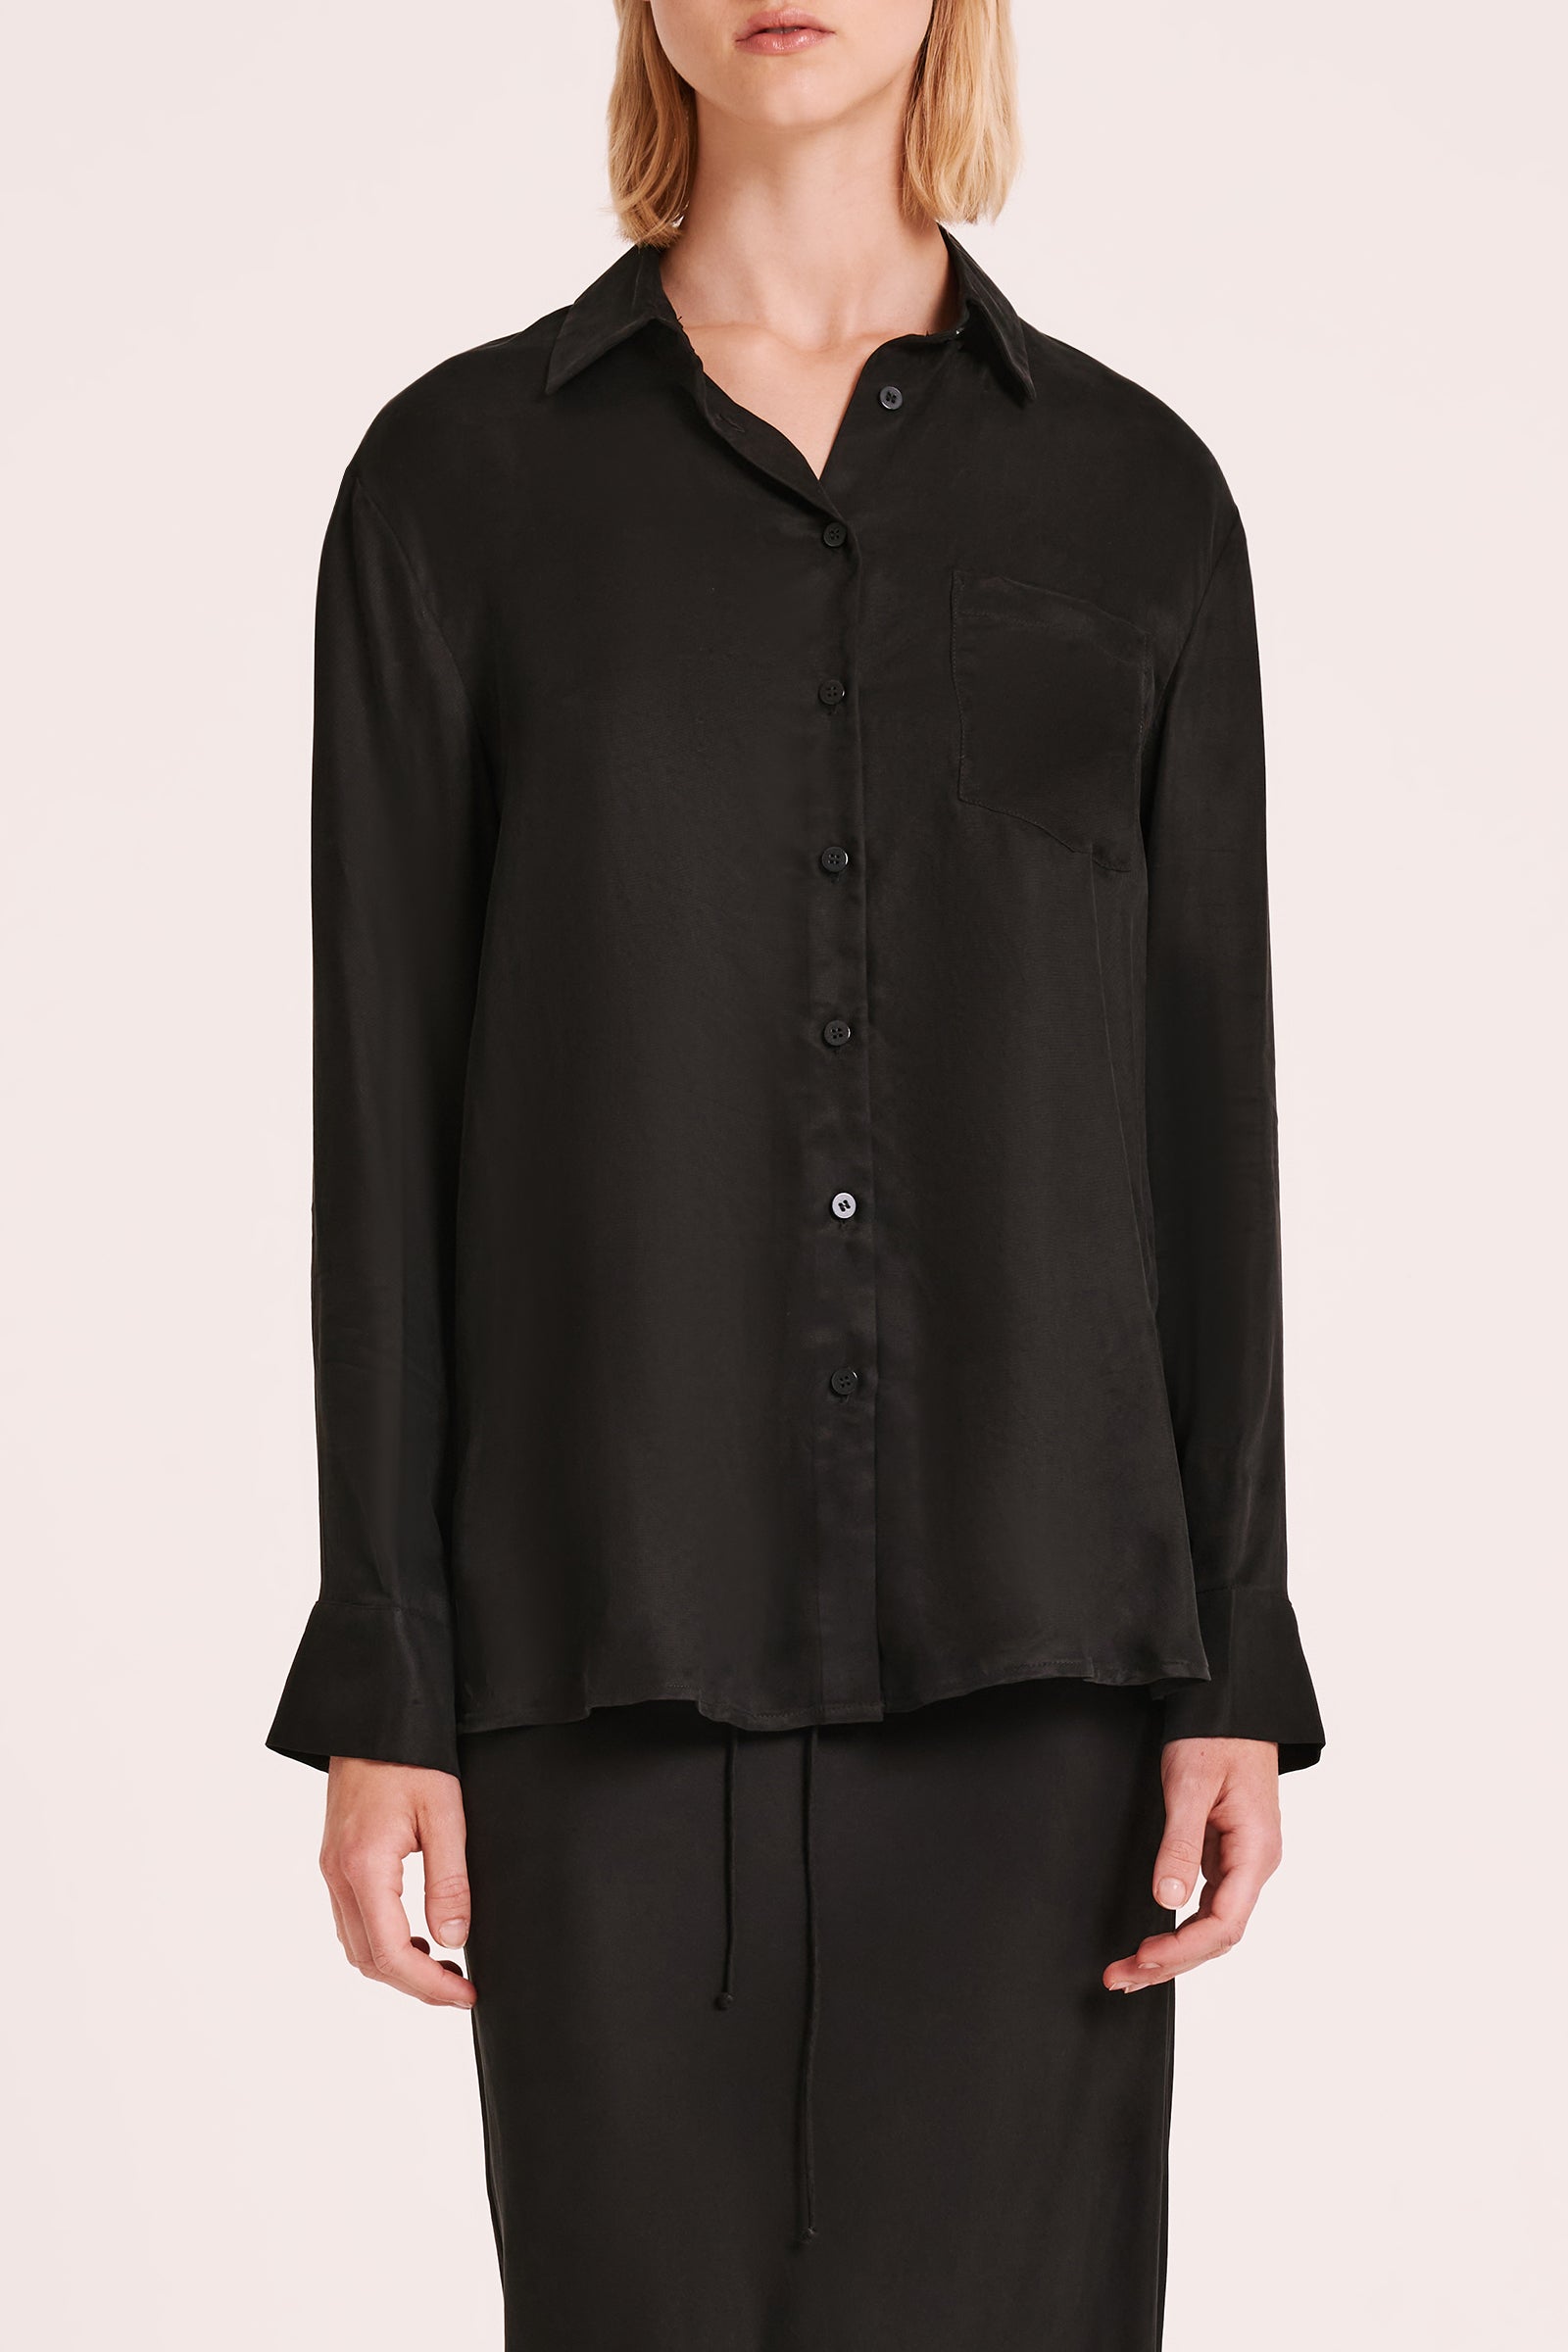 Ari L/s Cupro Shirt Black 